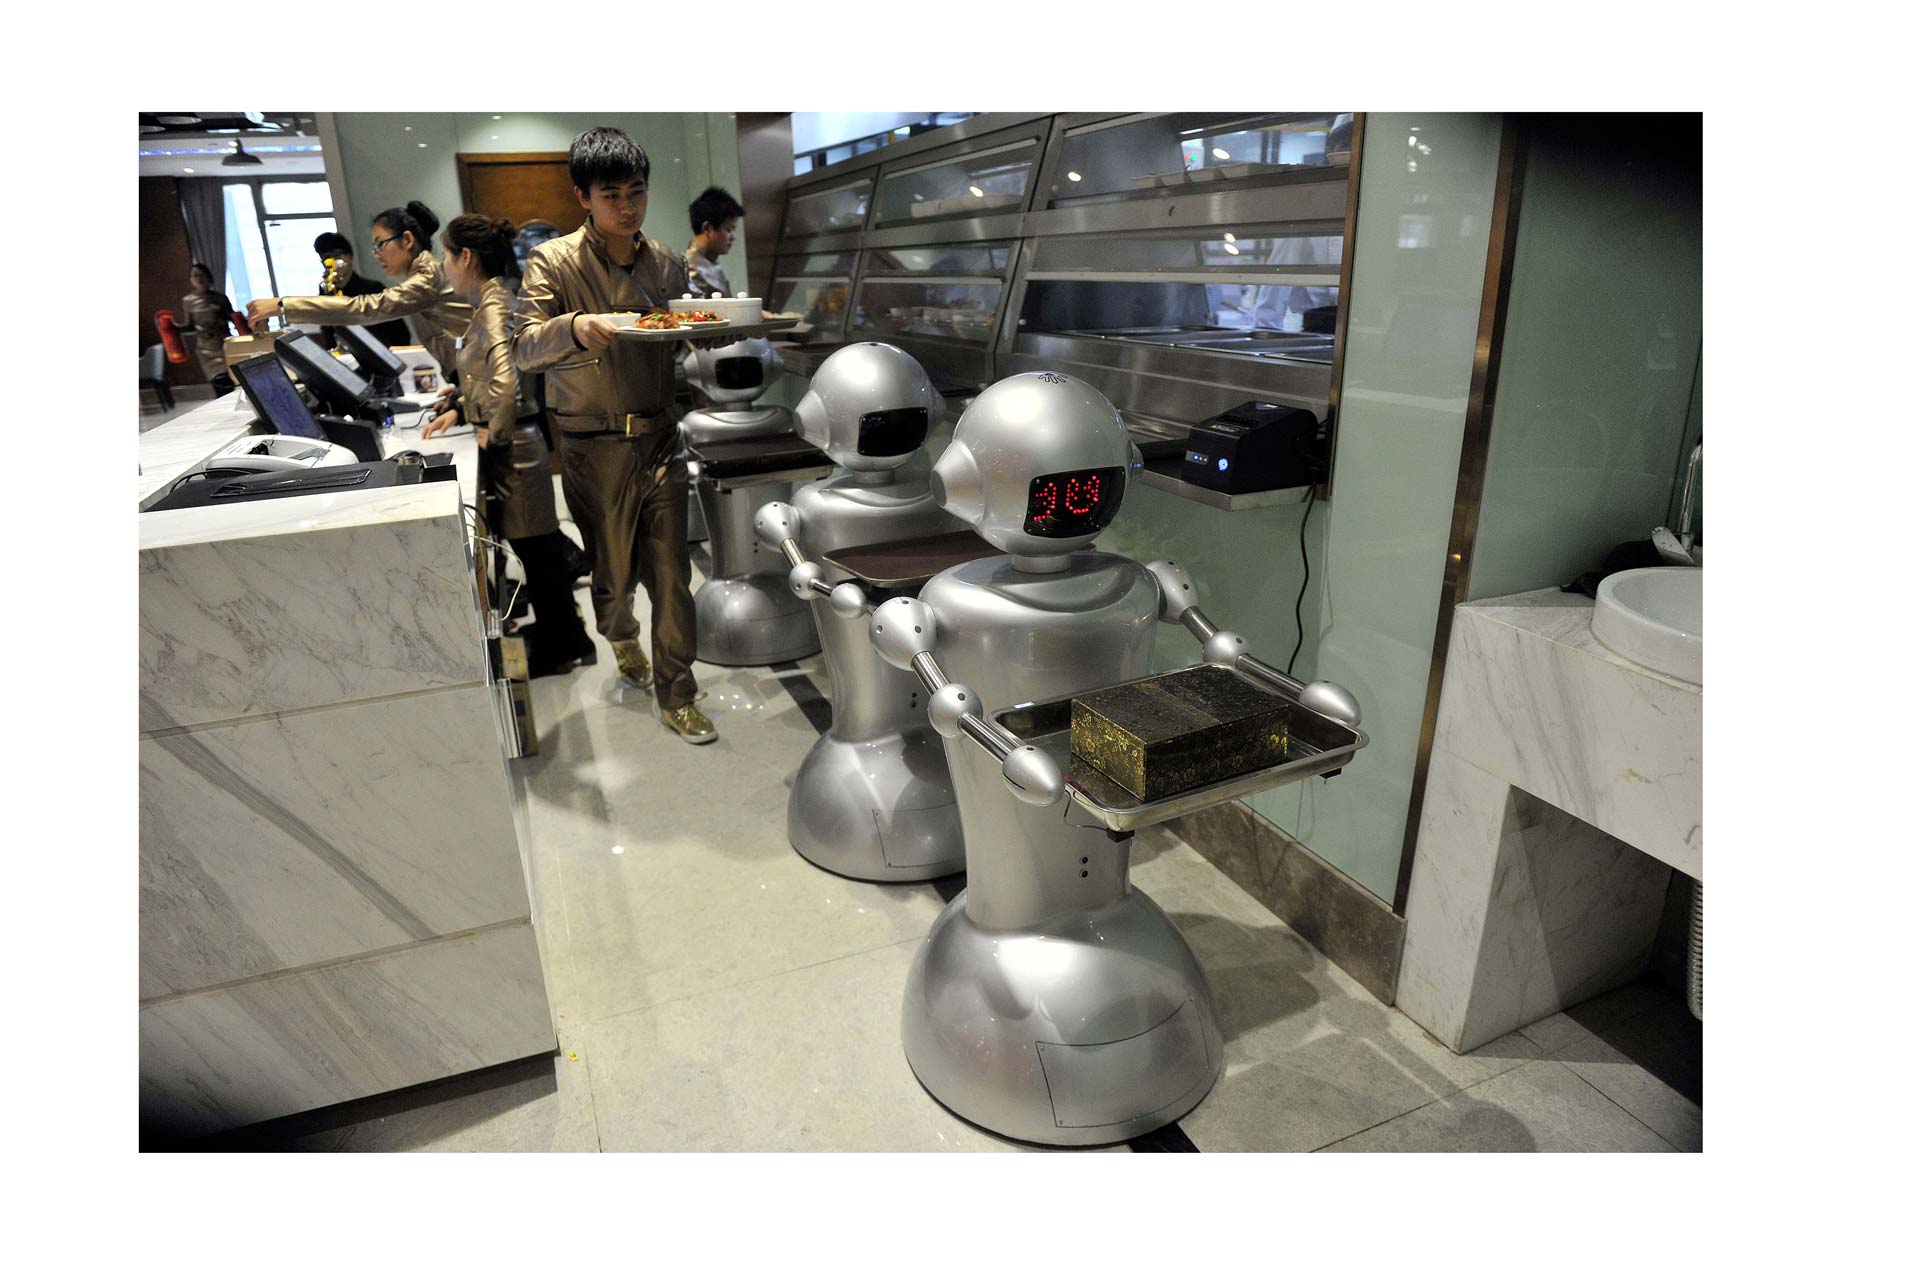 Un restaurante chino decidió “despedir” a los camareros robóticos debido a que no hacían bien su trabajo